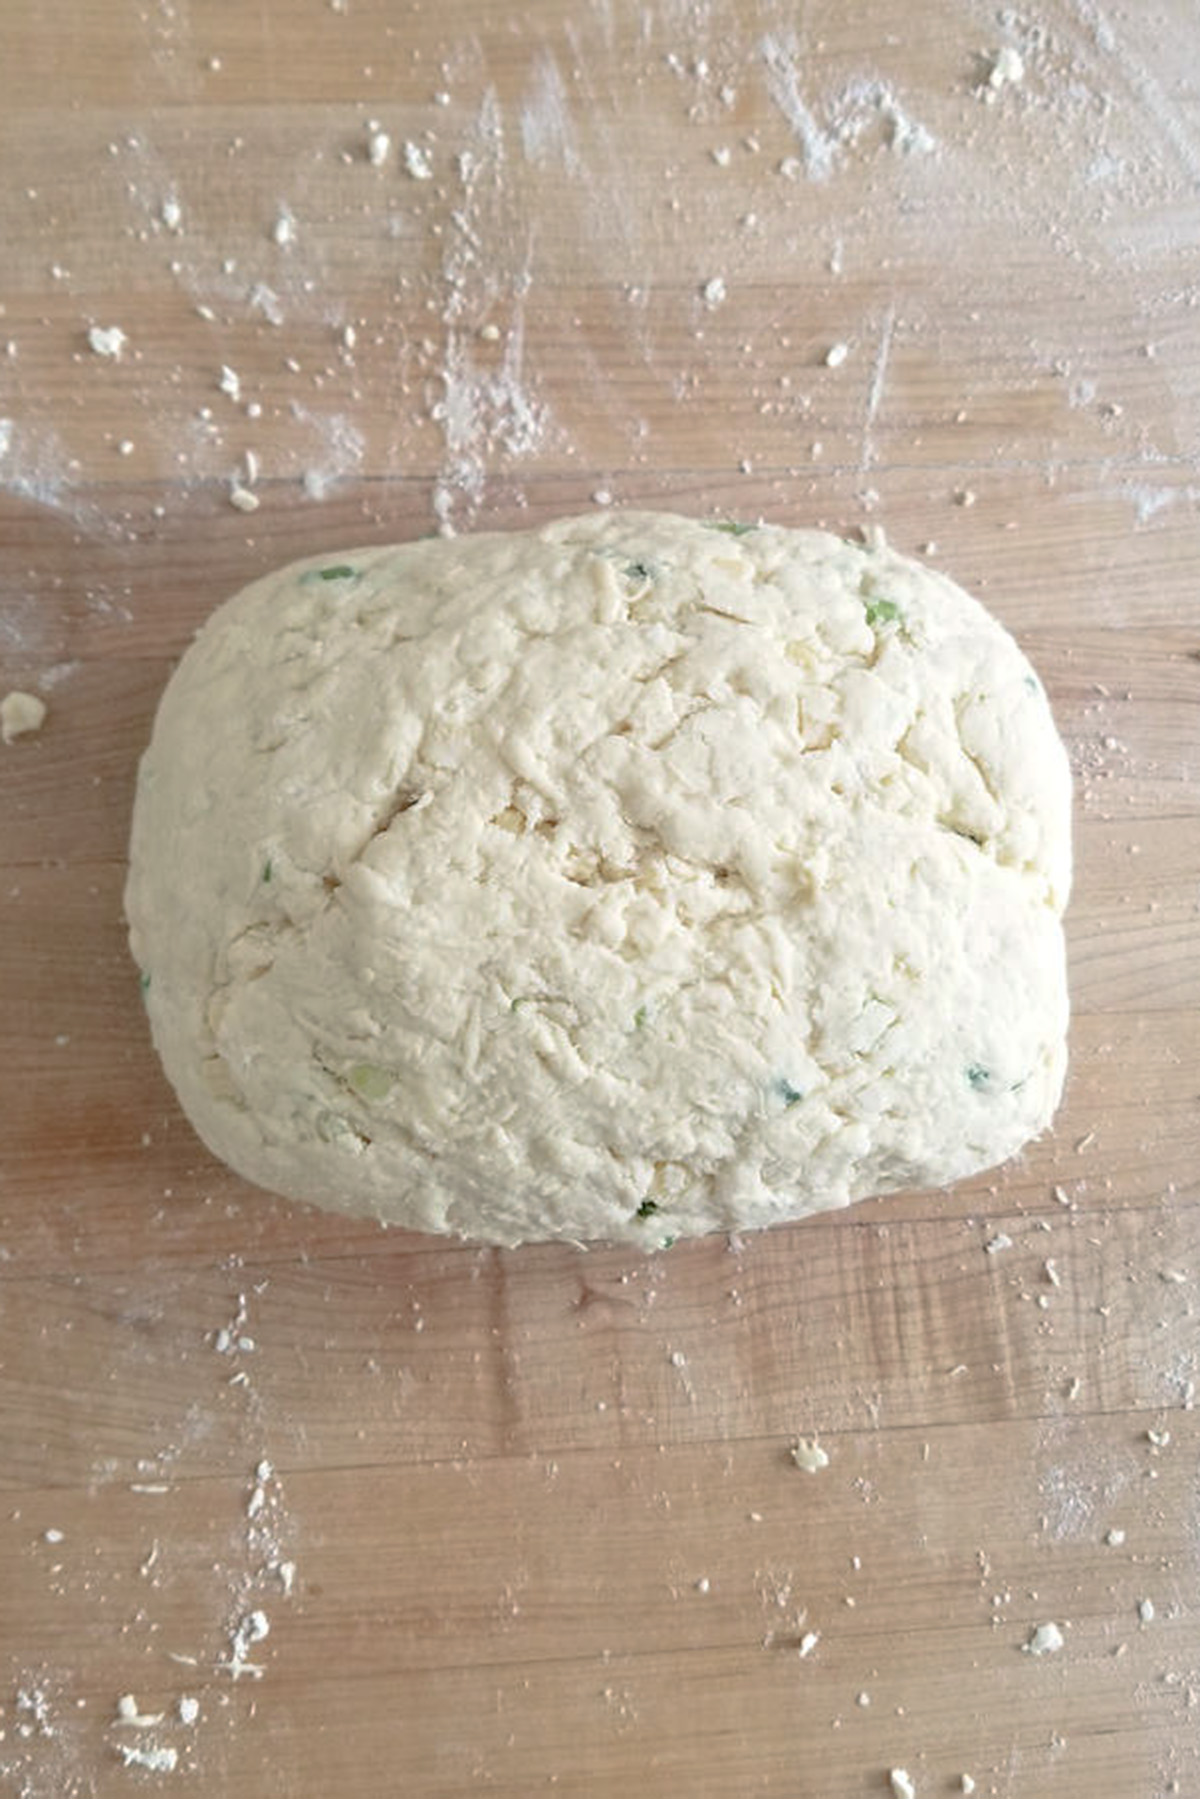 a rectangle of scone dough.